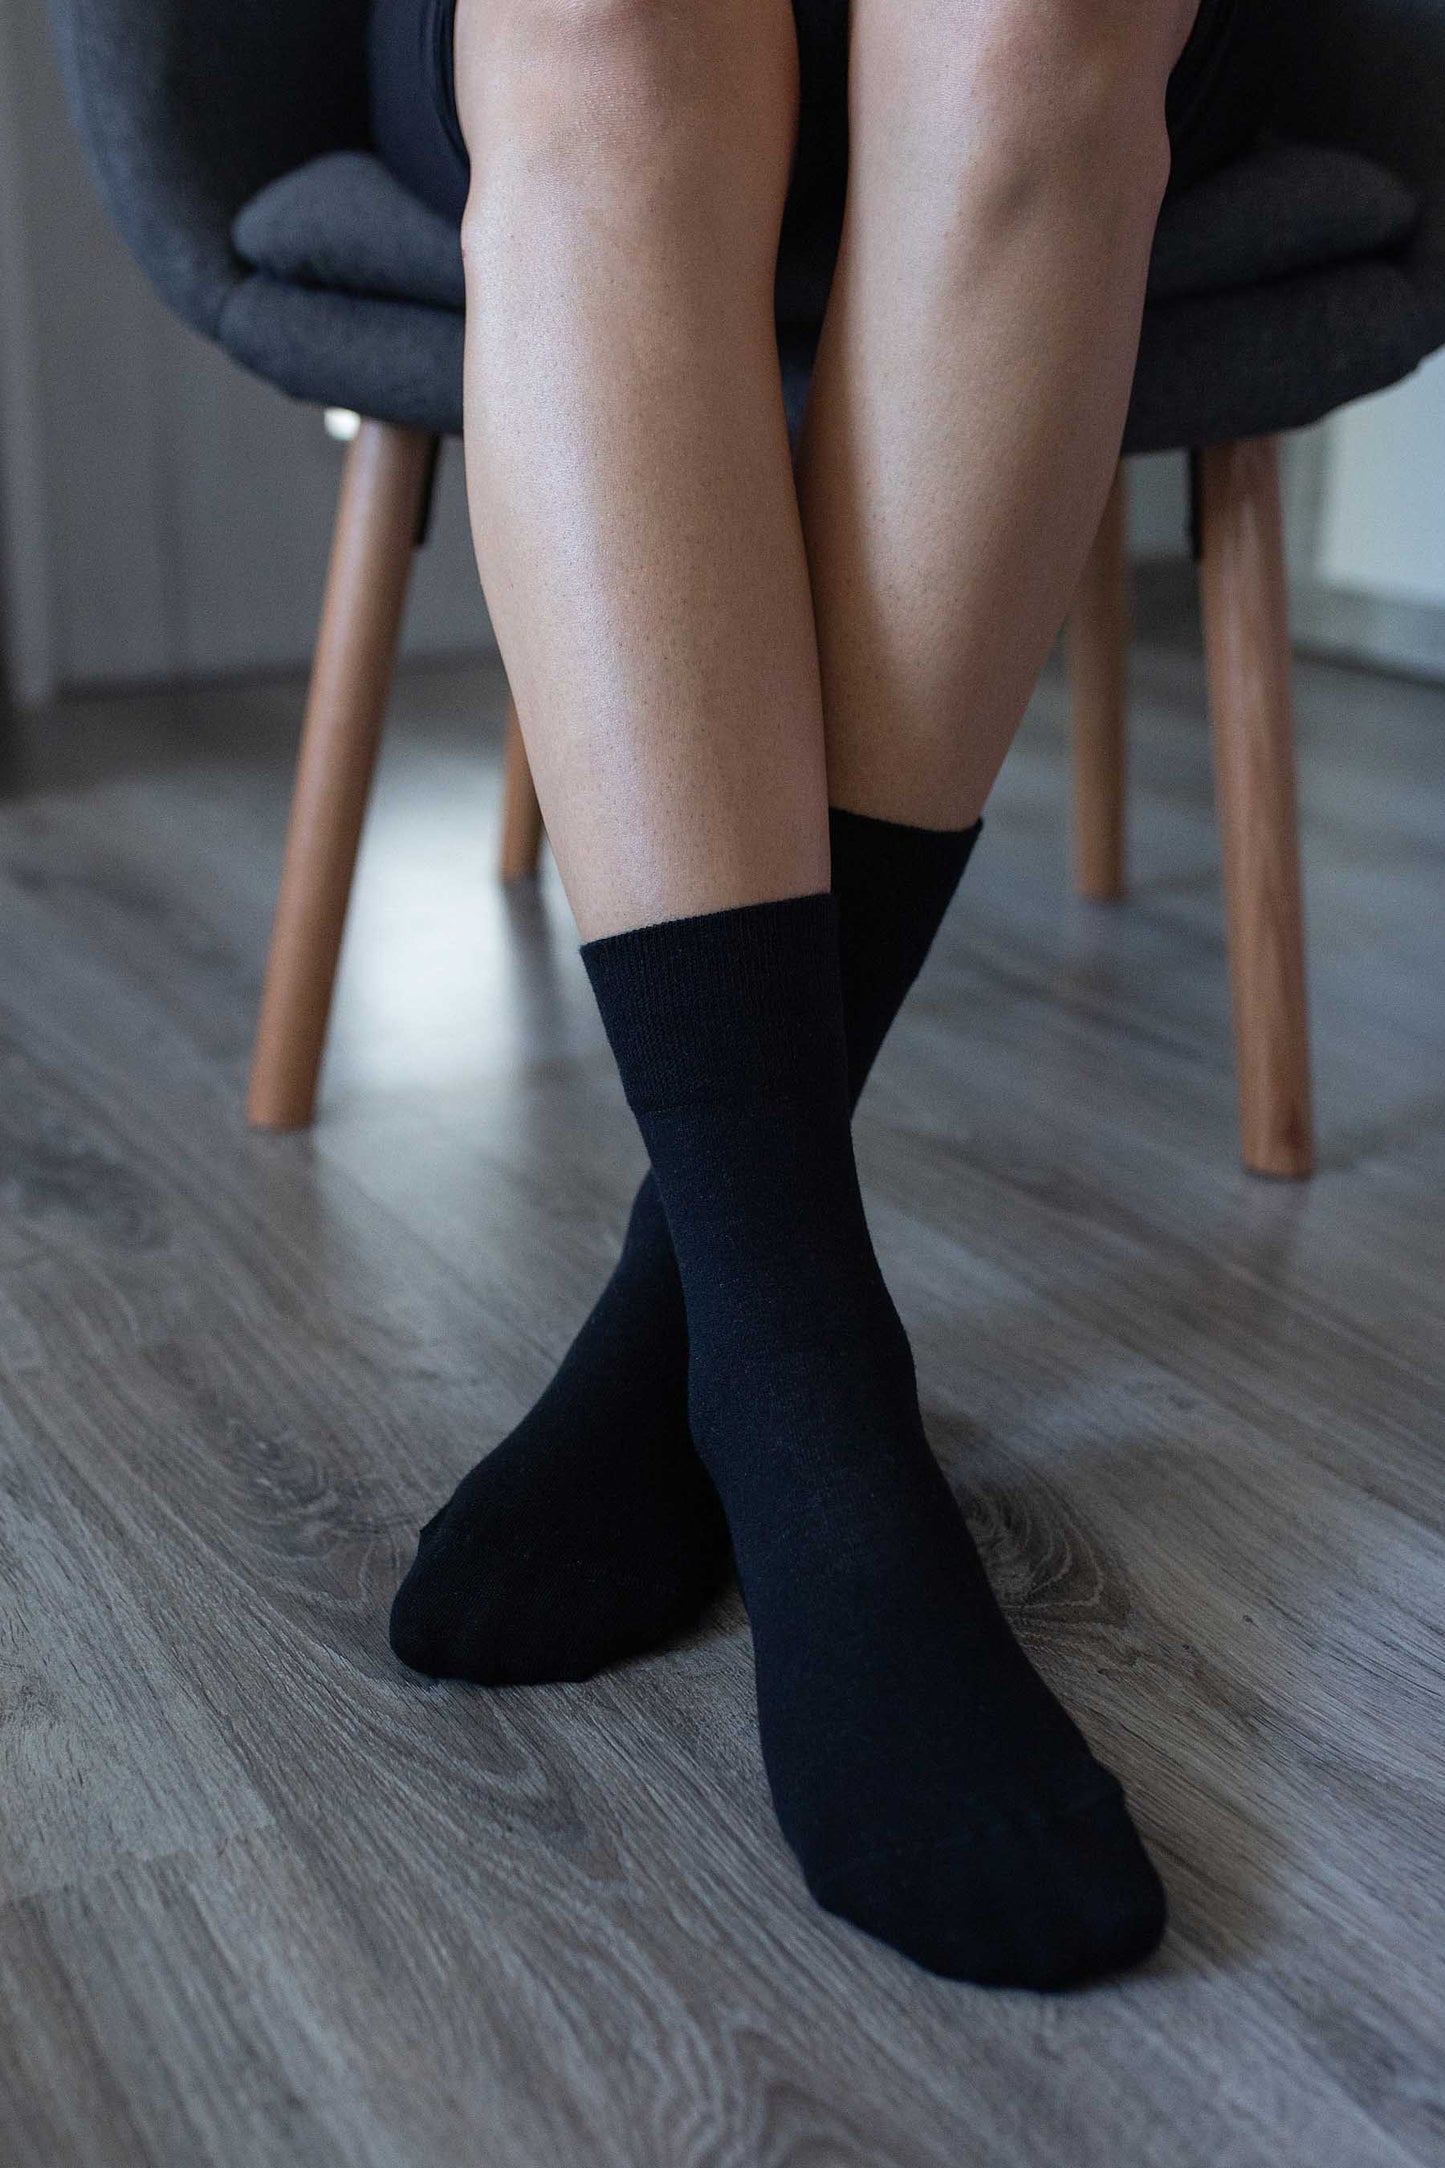 Be Lenka Barefoot Socks - Black